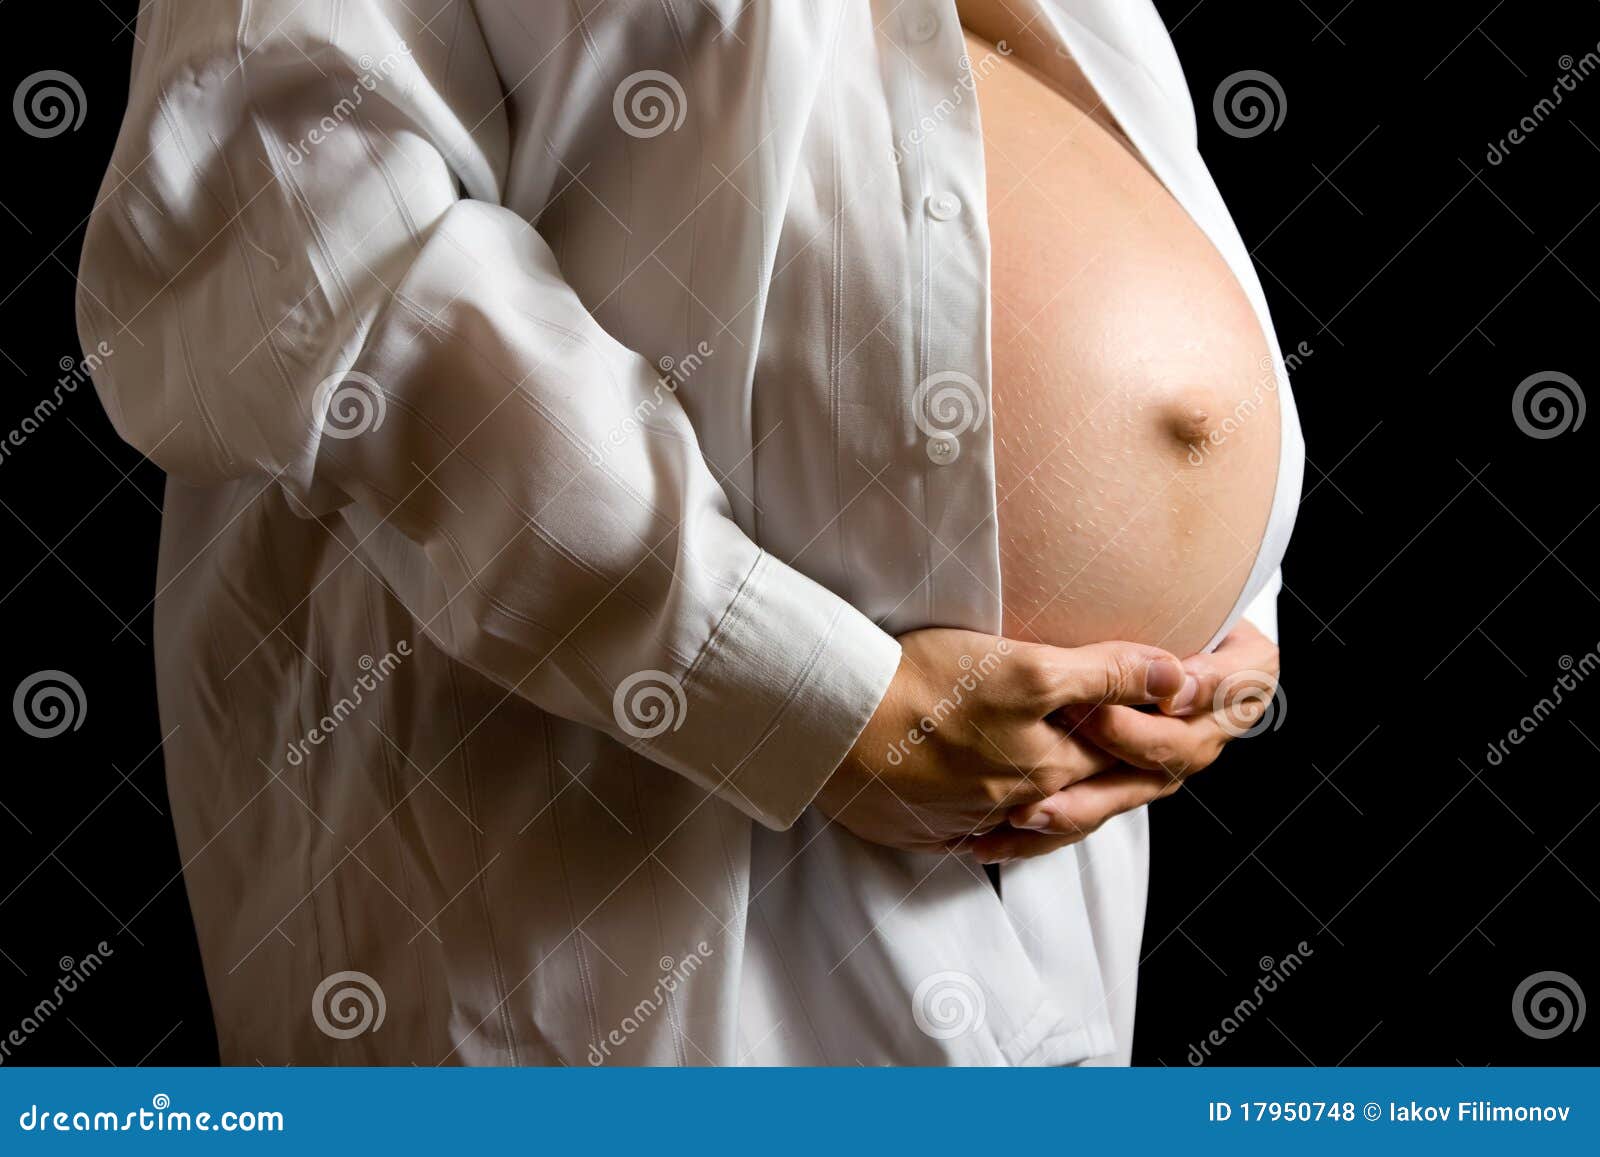 мять грудь беременной фото 39